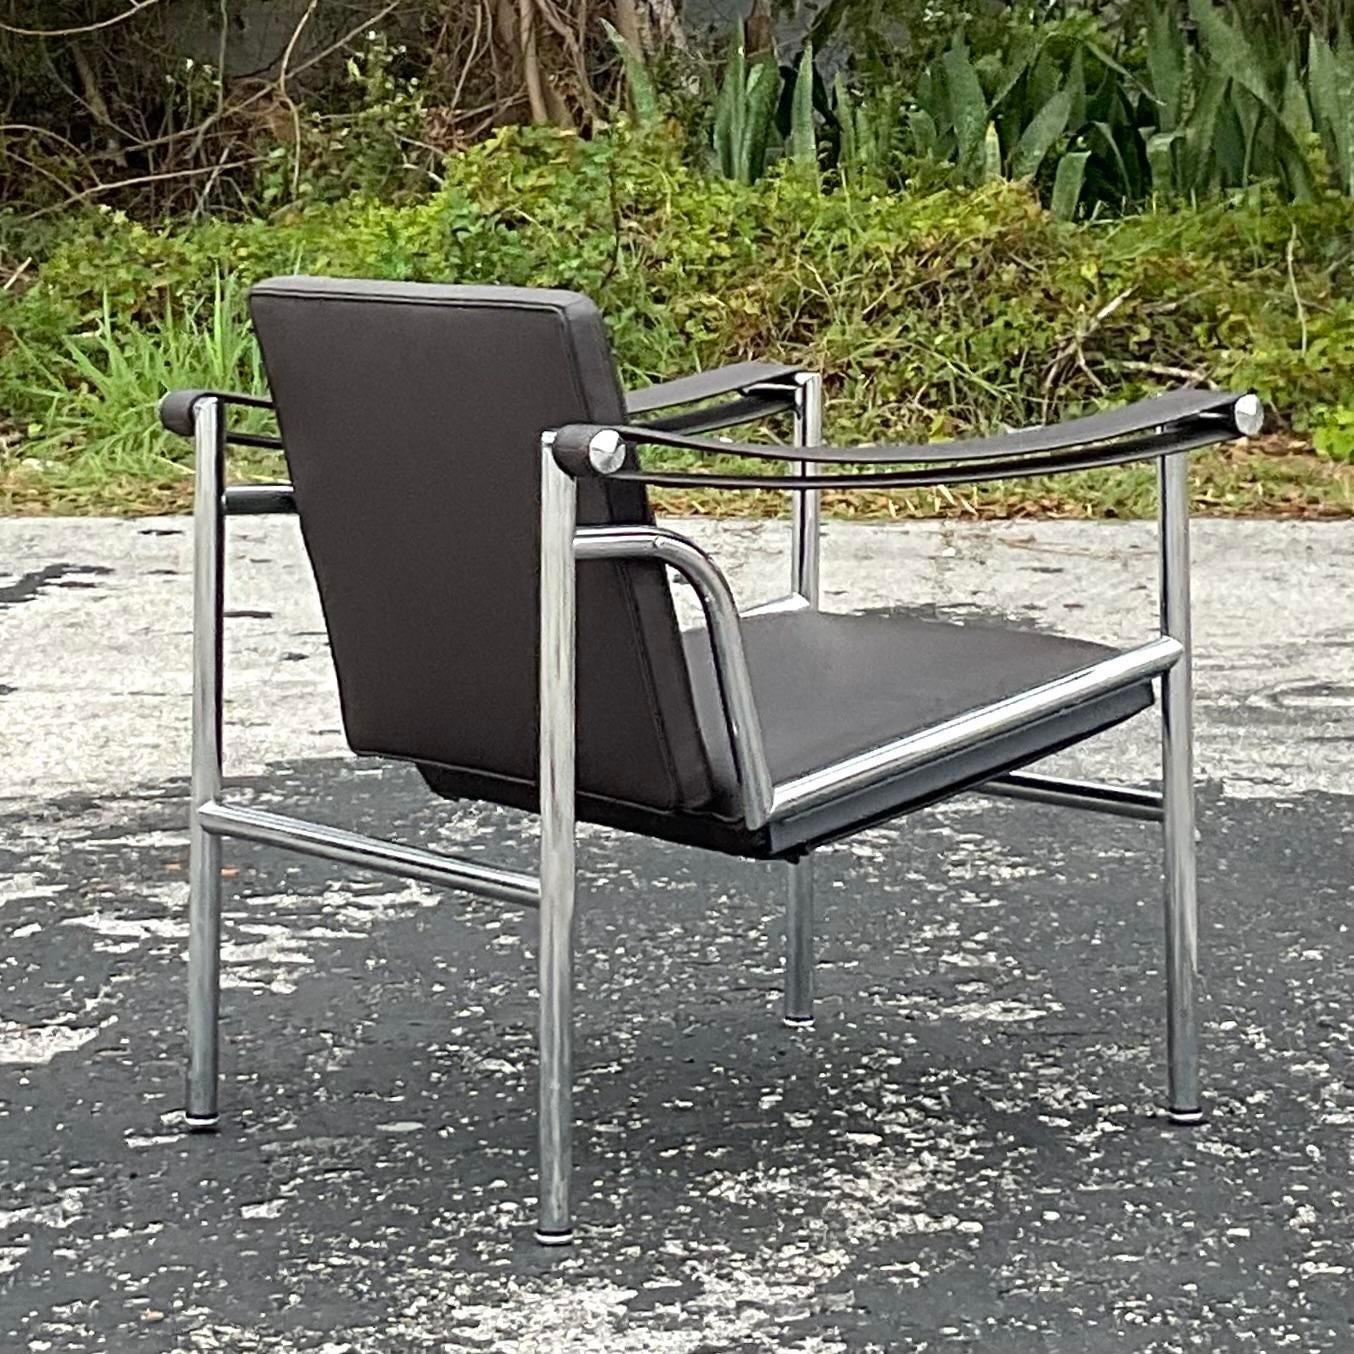 Une superbe chaise longue en cuir Contemporary vintage. Le design iconique de Corbusier réalisé par le groupe Cassina en Italie. Magnifique cadre chromé avec un revêtement en cuir marron foncé. Étiqueté au dos. Acquis d'une propriété de Palm Beach.